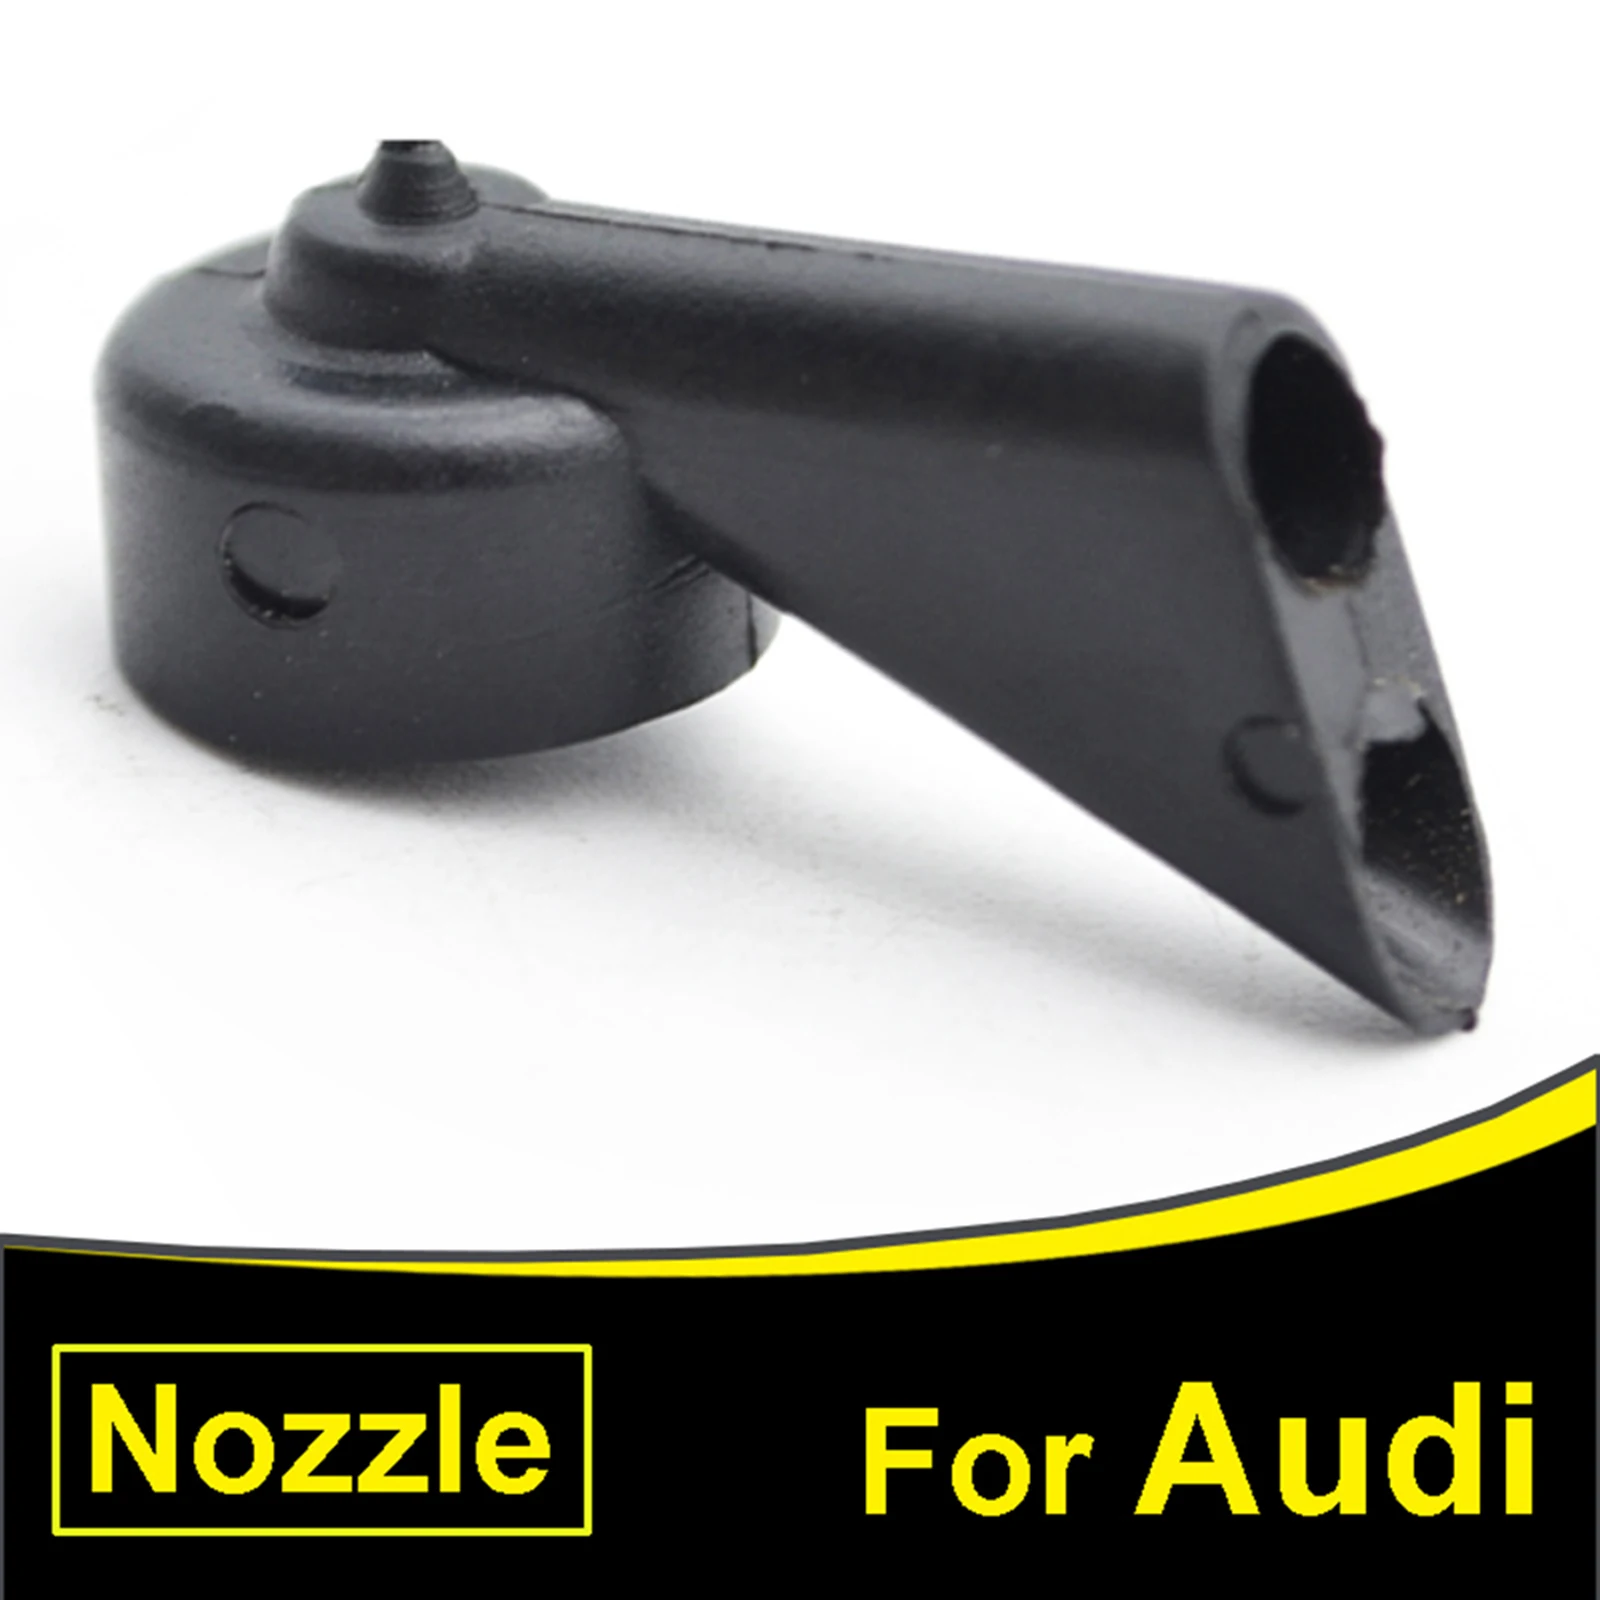 

Car Windshield Rear Wiper Washer Nozzle Spray Jet For Audi A1 Q5 A3 A4 A6 Q7 8E9955985 Auto Window Washer Nozzle Black Sprayer